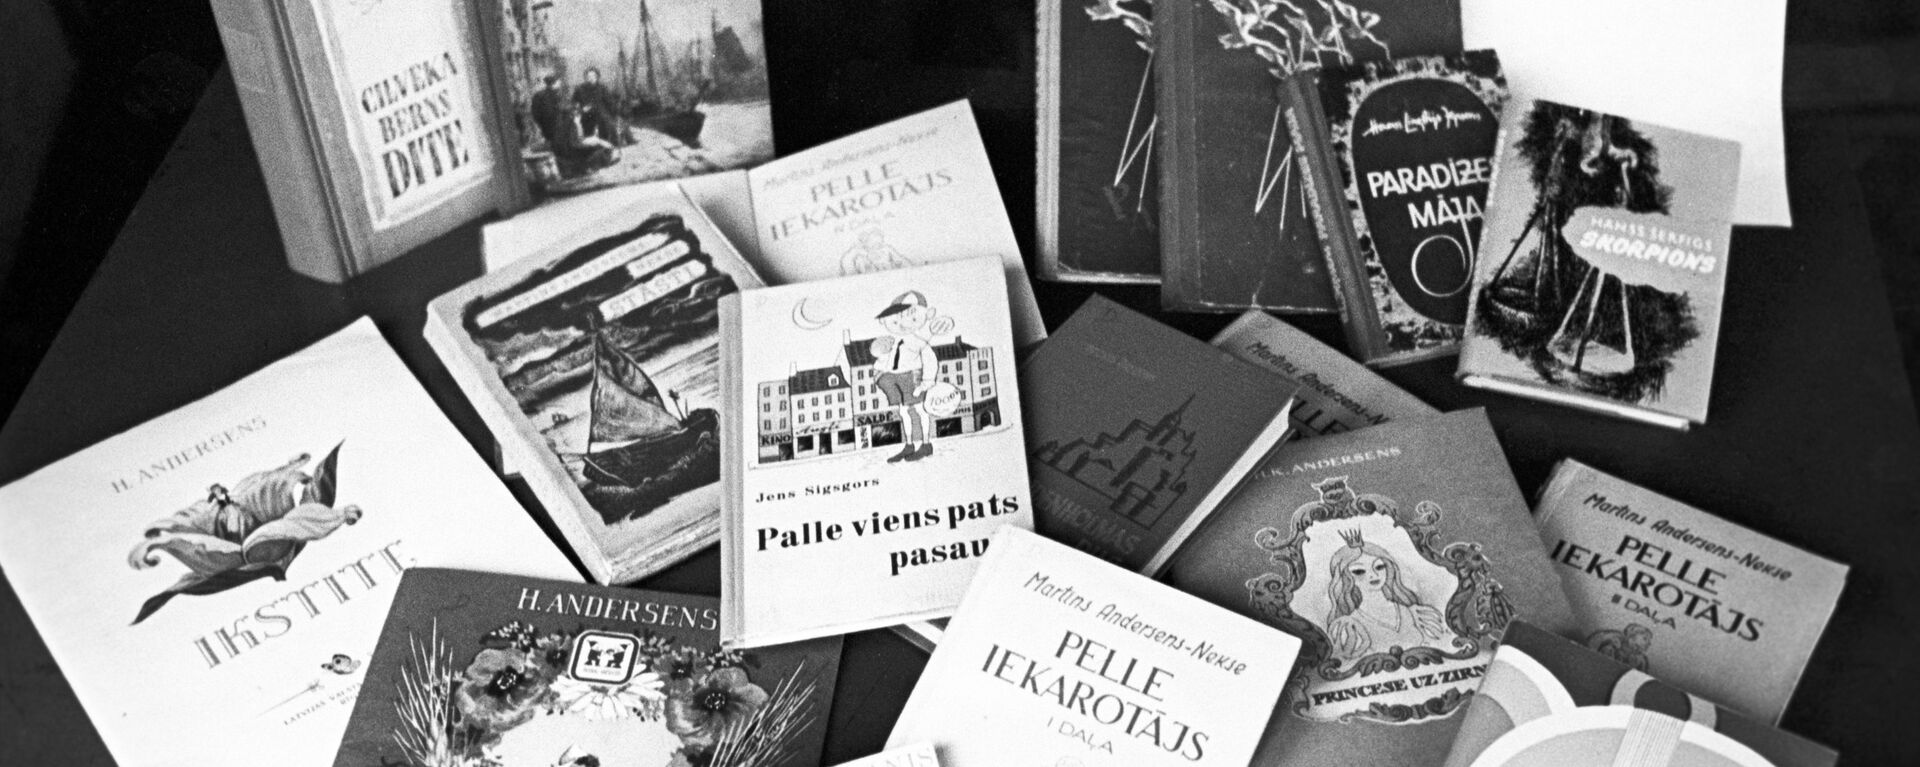 Книги, переведенные на латышский язык. Архивное фото - Sputnik Латвия, 1920, 18.02.2017